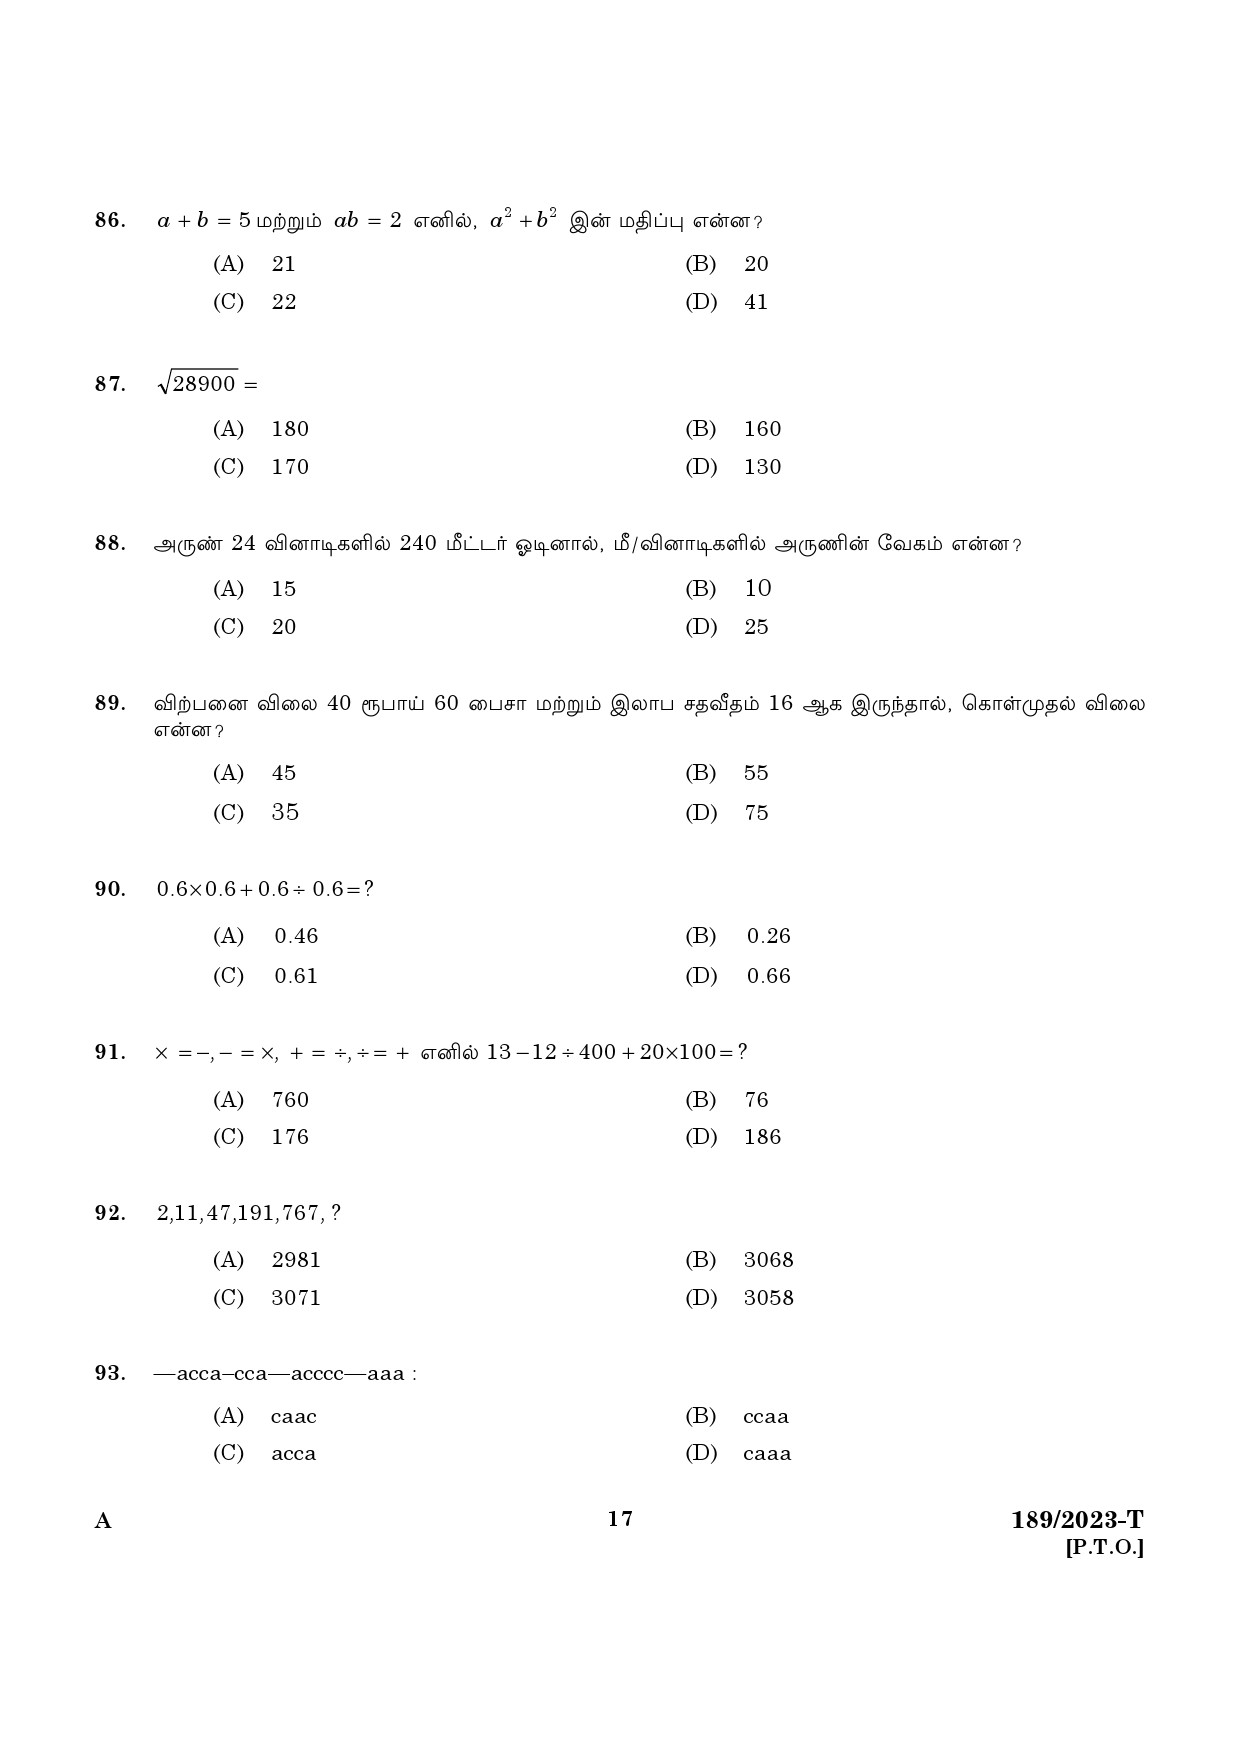 KPSC LGS Tamil Exam 2023 Code 1892023 T 15